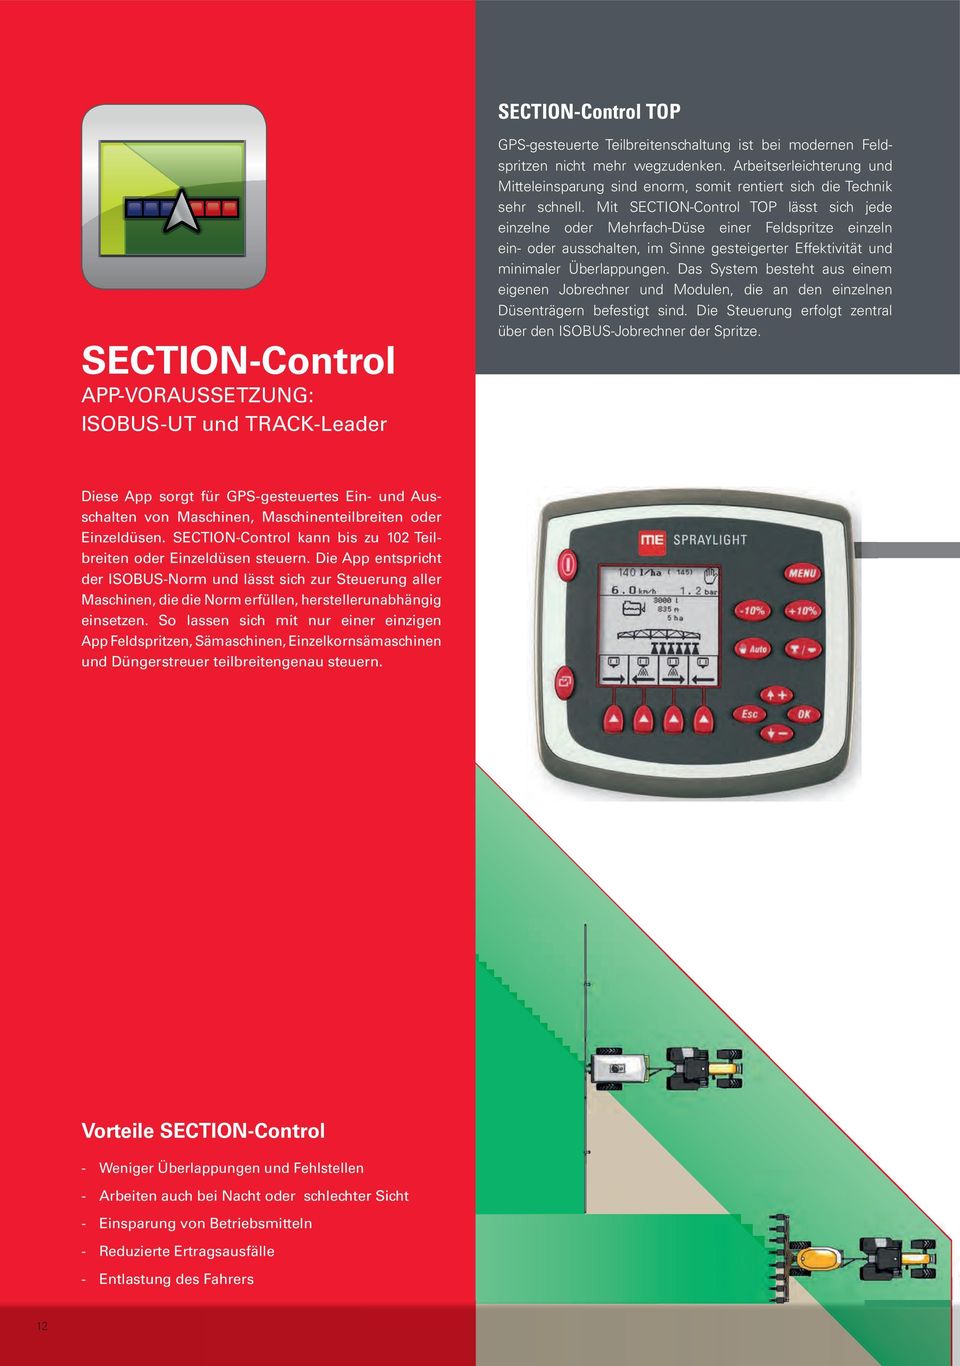 Mit SECTION-Control TOP lässt sich jede einzelne oder Mehrfach-Düse einer Feldspritze einzeln ein- oder ausschalten, im Sinne gesteigerter Effektivität und minimaler Überlappungen.